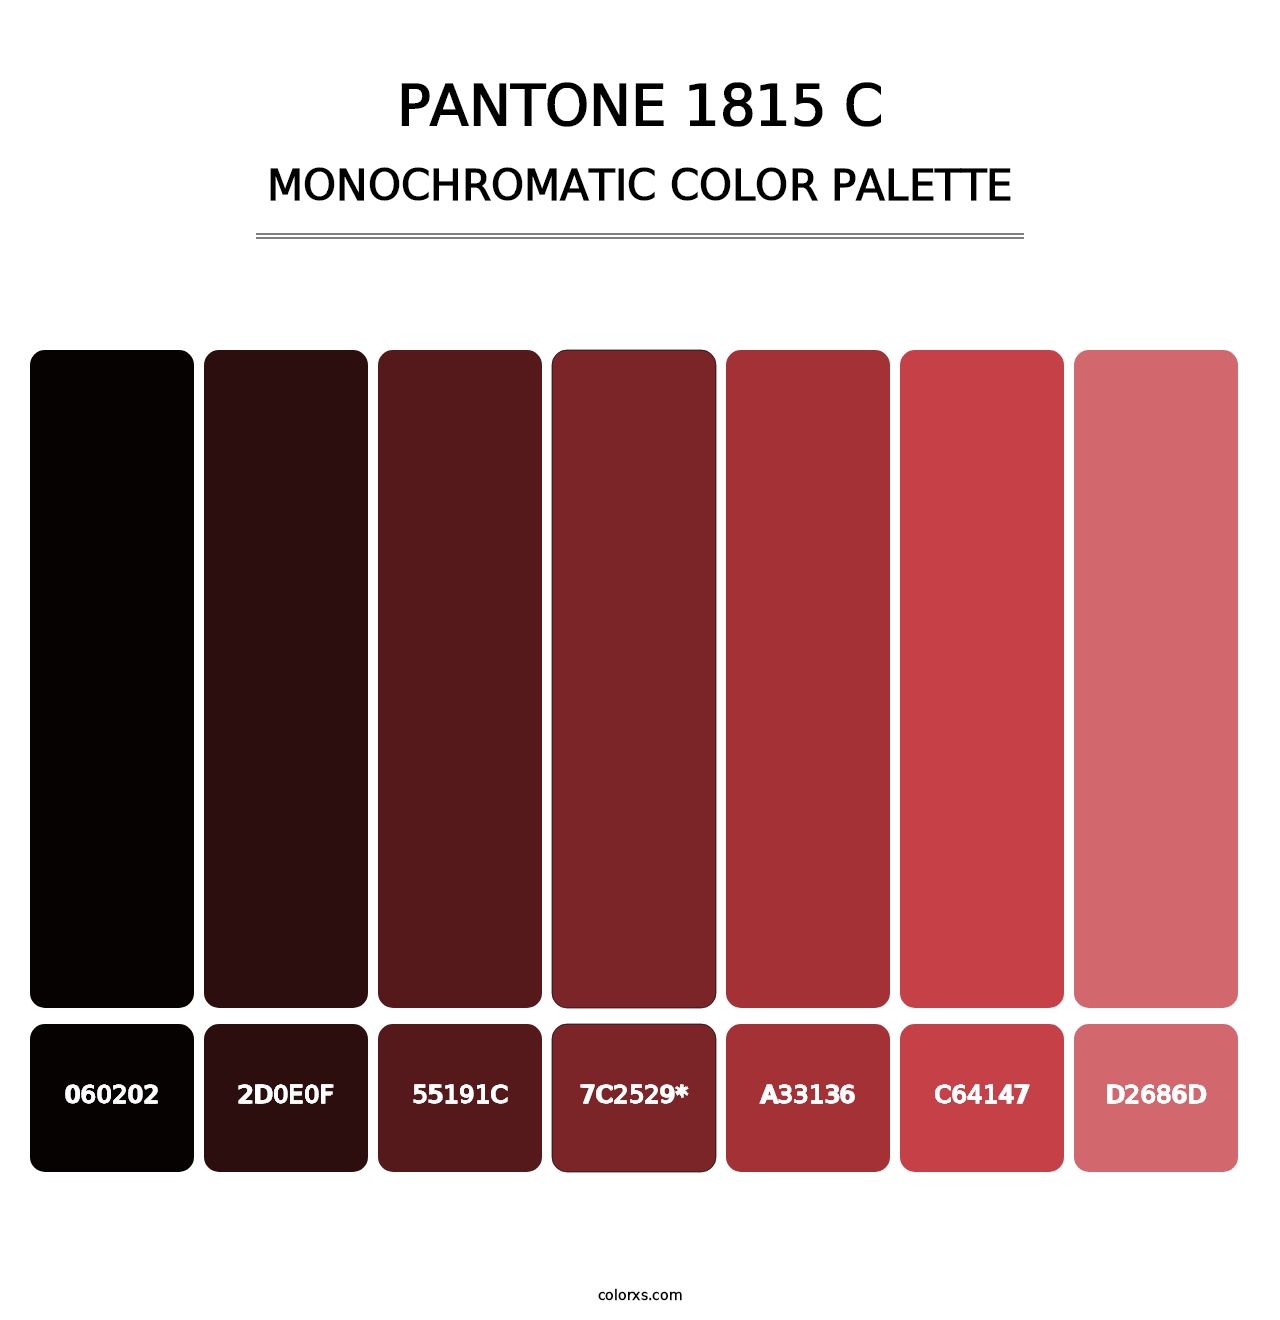 PANTONE 1815 C - Monochromatic Color Palette